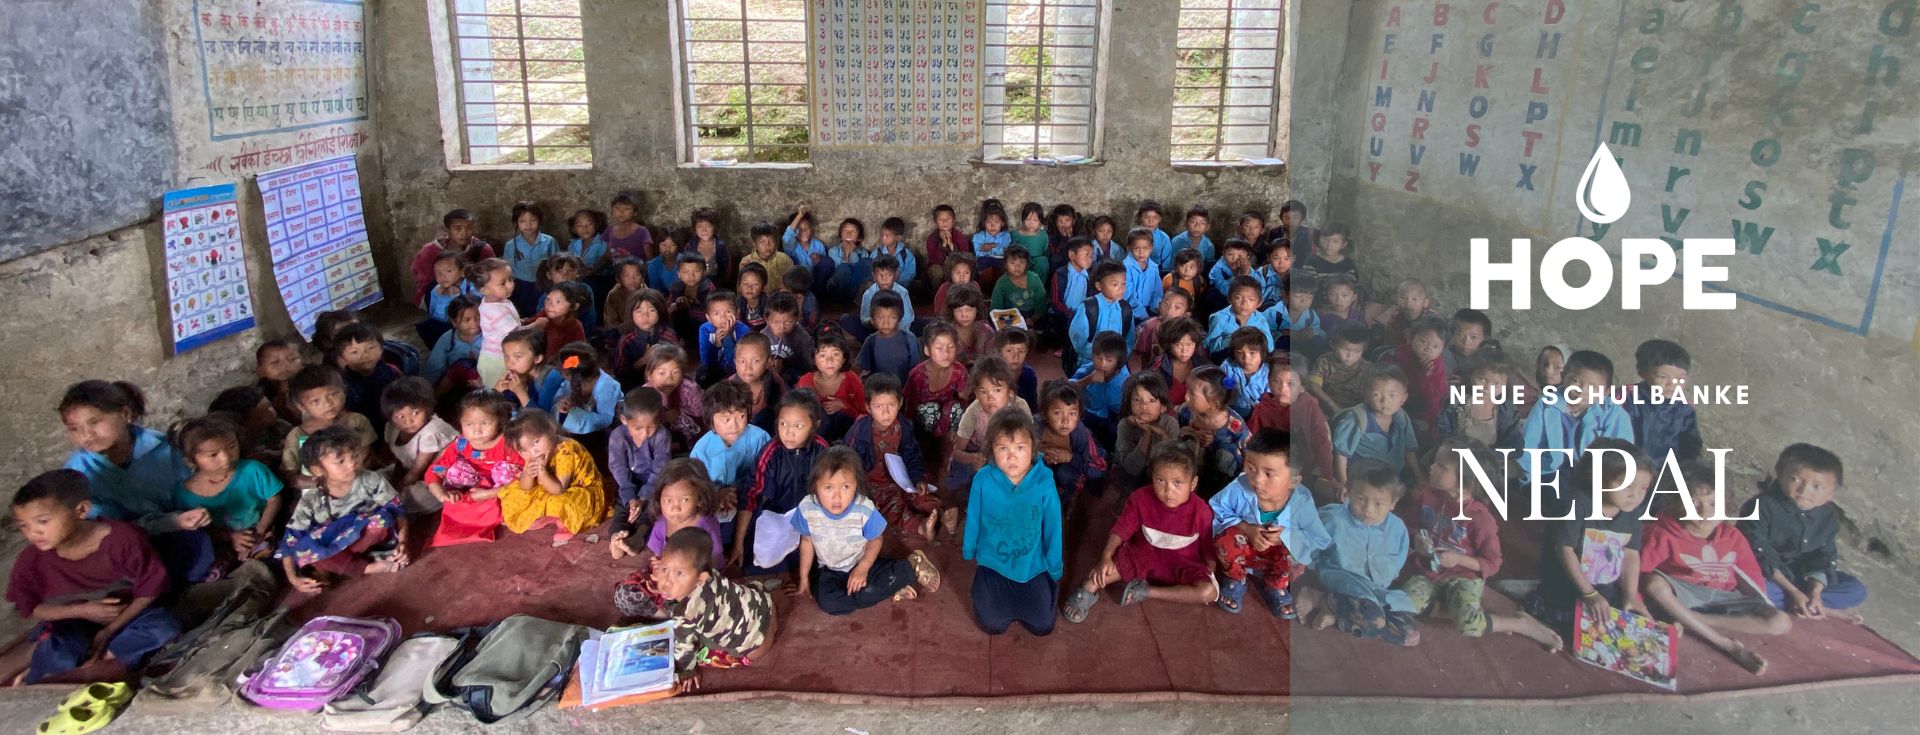 Kinder brauchen Hilfe, Nepal, Hilfe, Bildung, Schule, Schulbänke, Zukunft